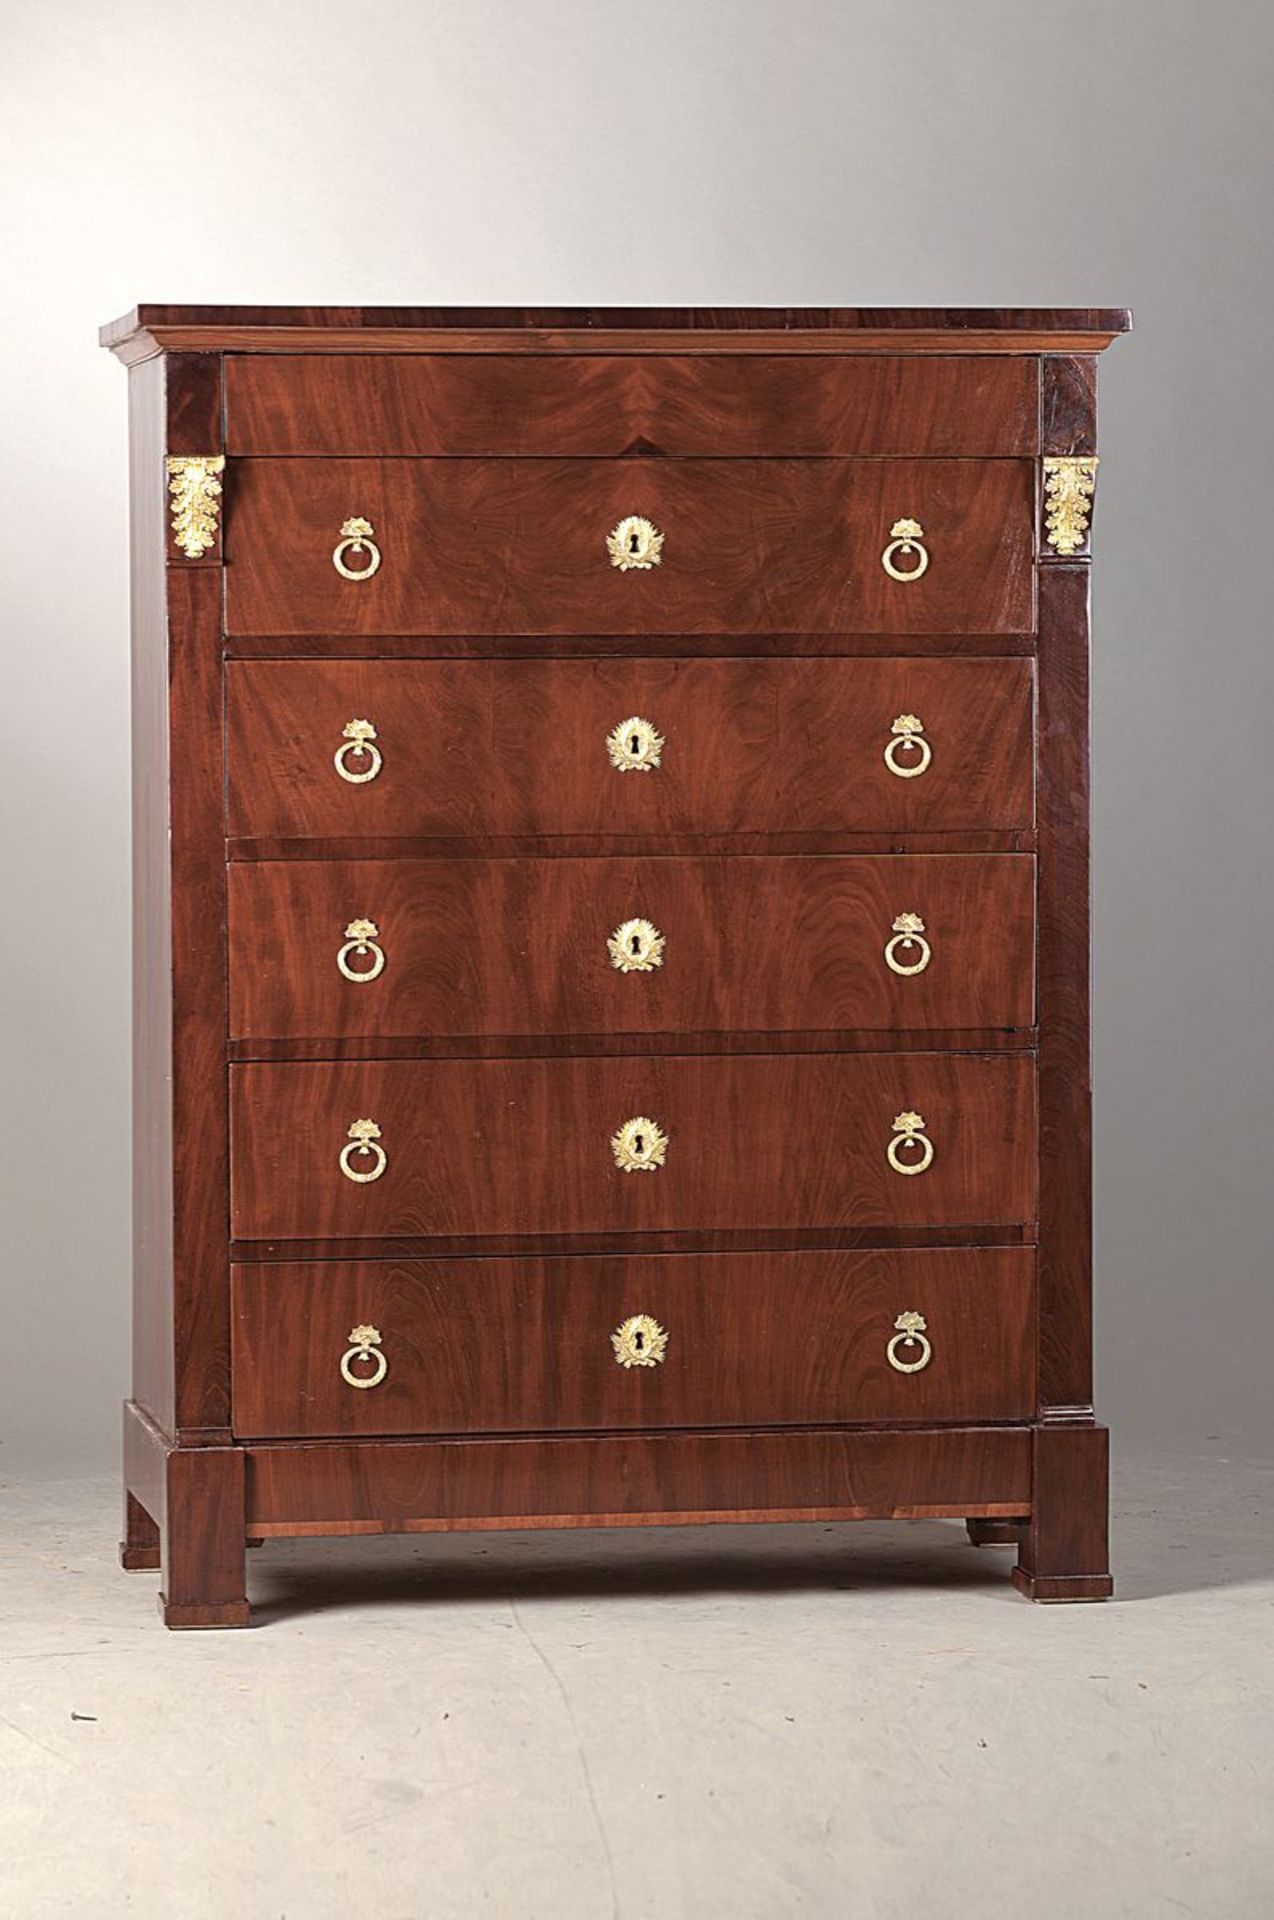 high chest, T. Ebershold, Bern, around 1830, 6 drawers, one hidden drawer in head, mahogany veneer